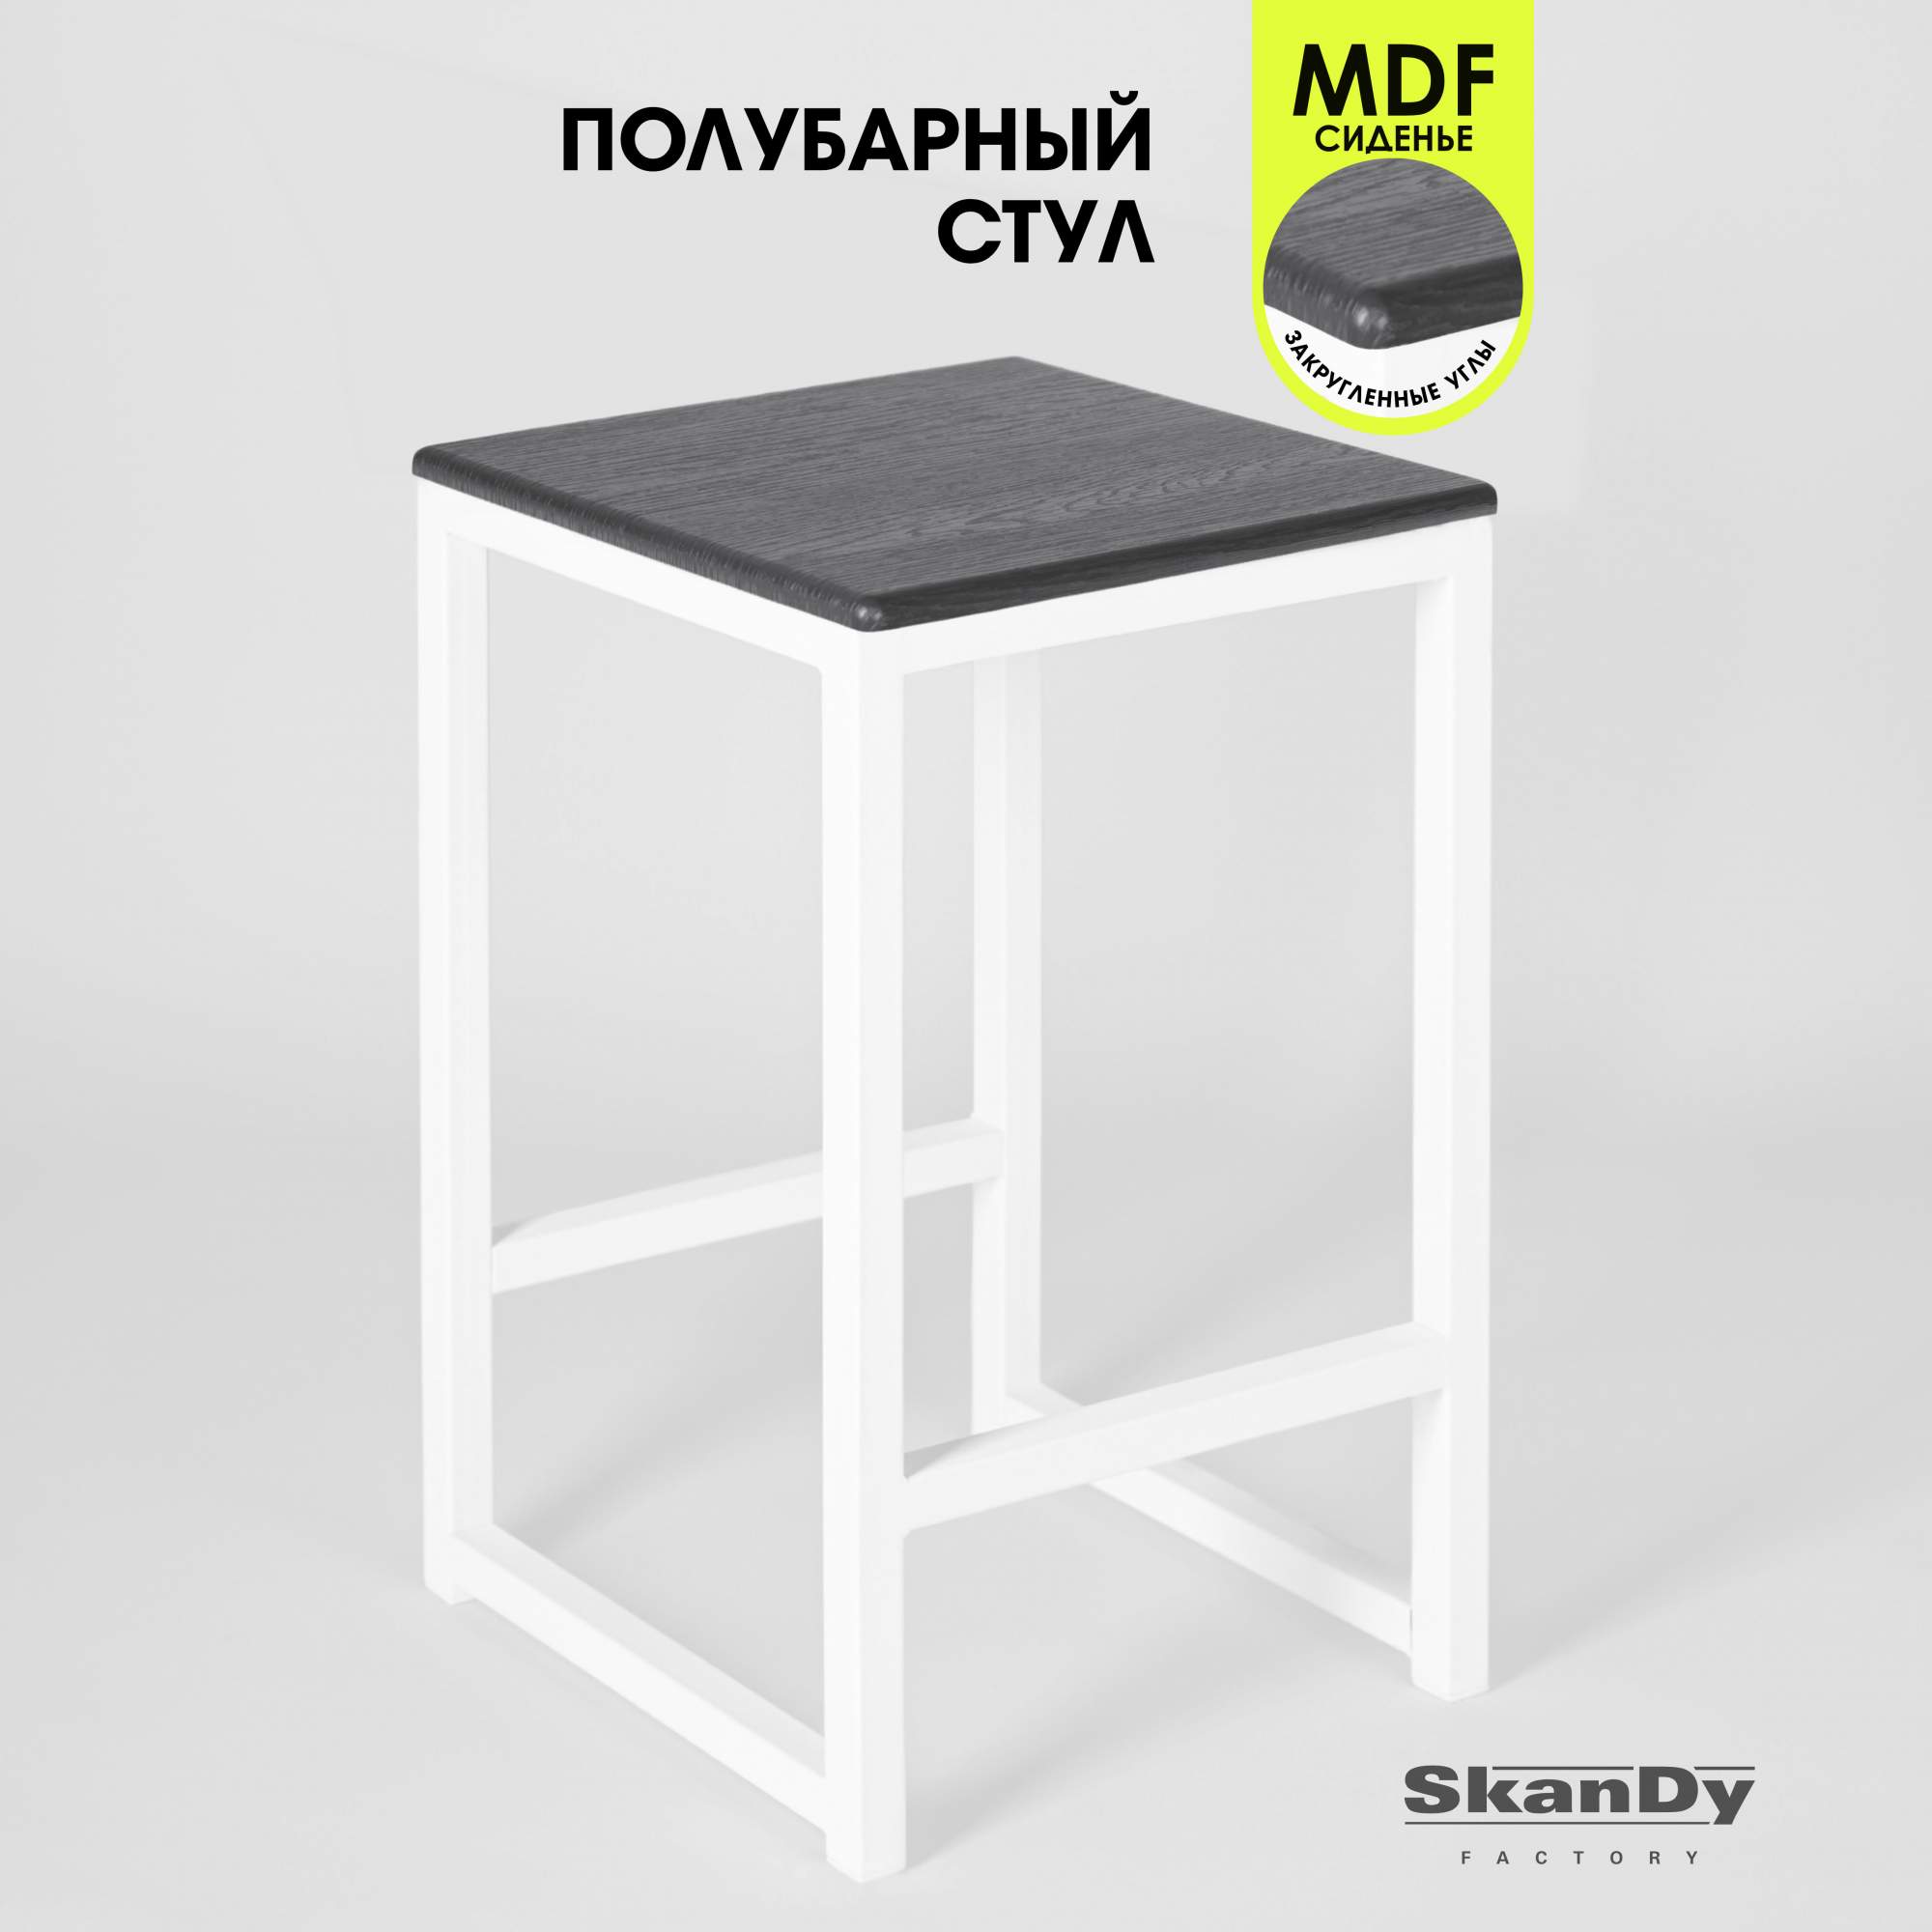 Полубарный стул для кухни SkanDy Factory, 60 см, графит